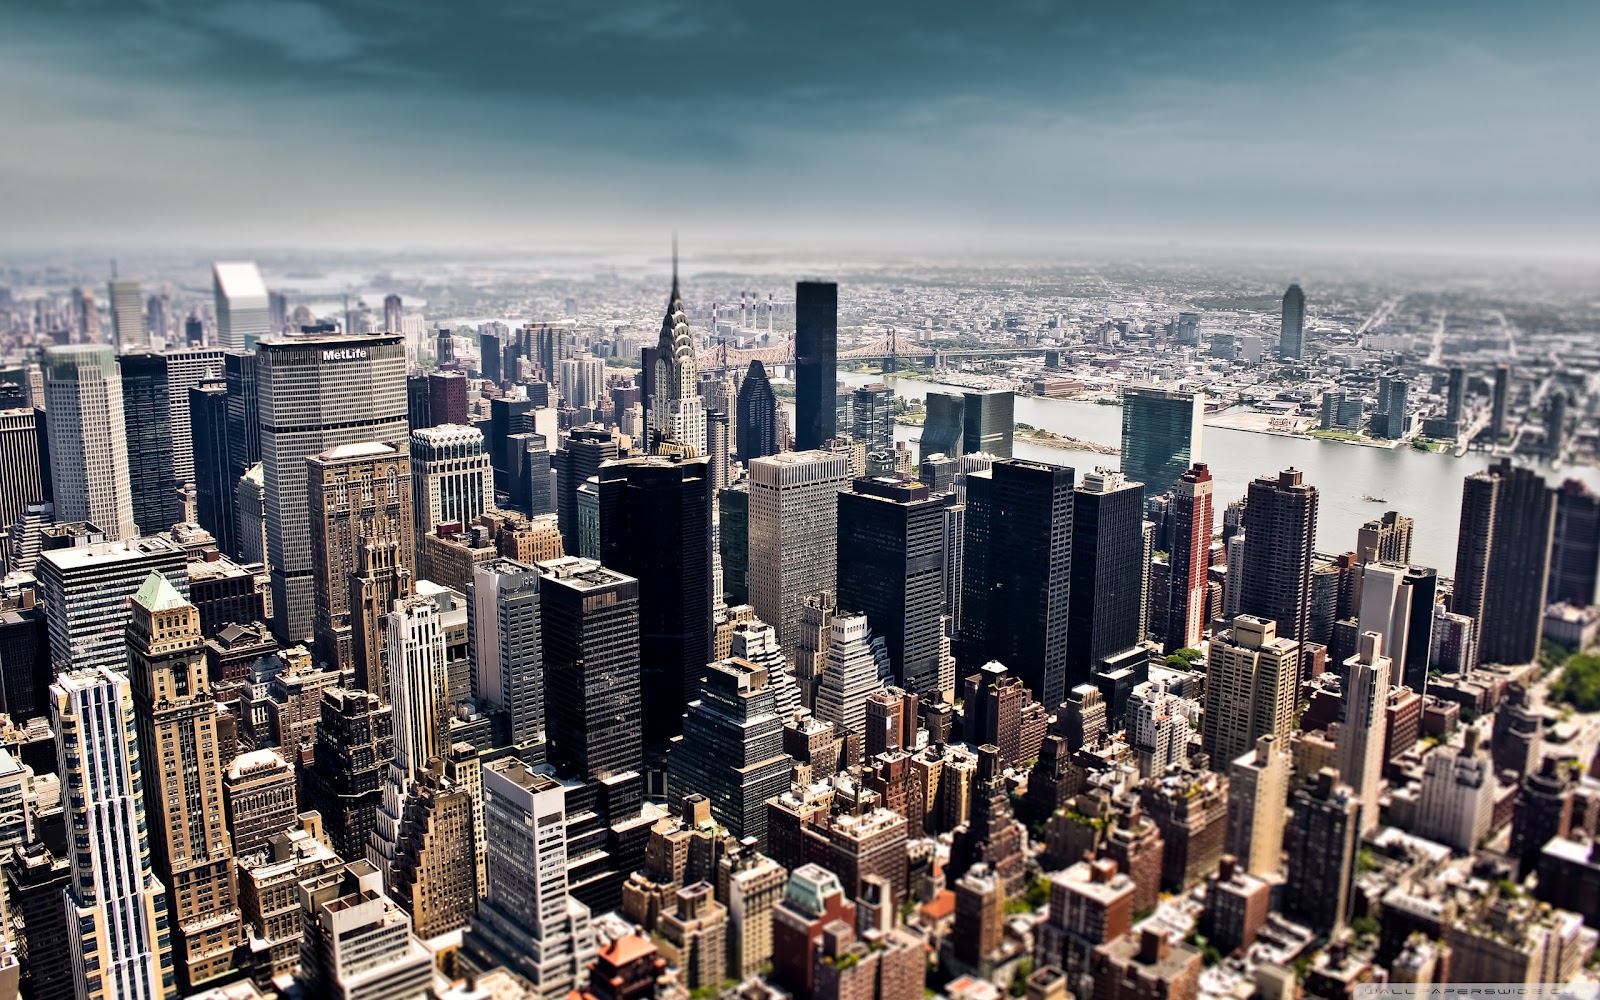  Foto  Kota  New York yang Megah 2020 Gambar  Keren dan Unik 